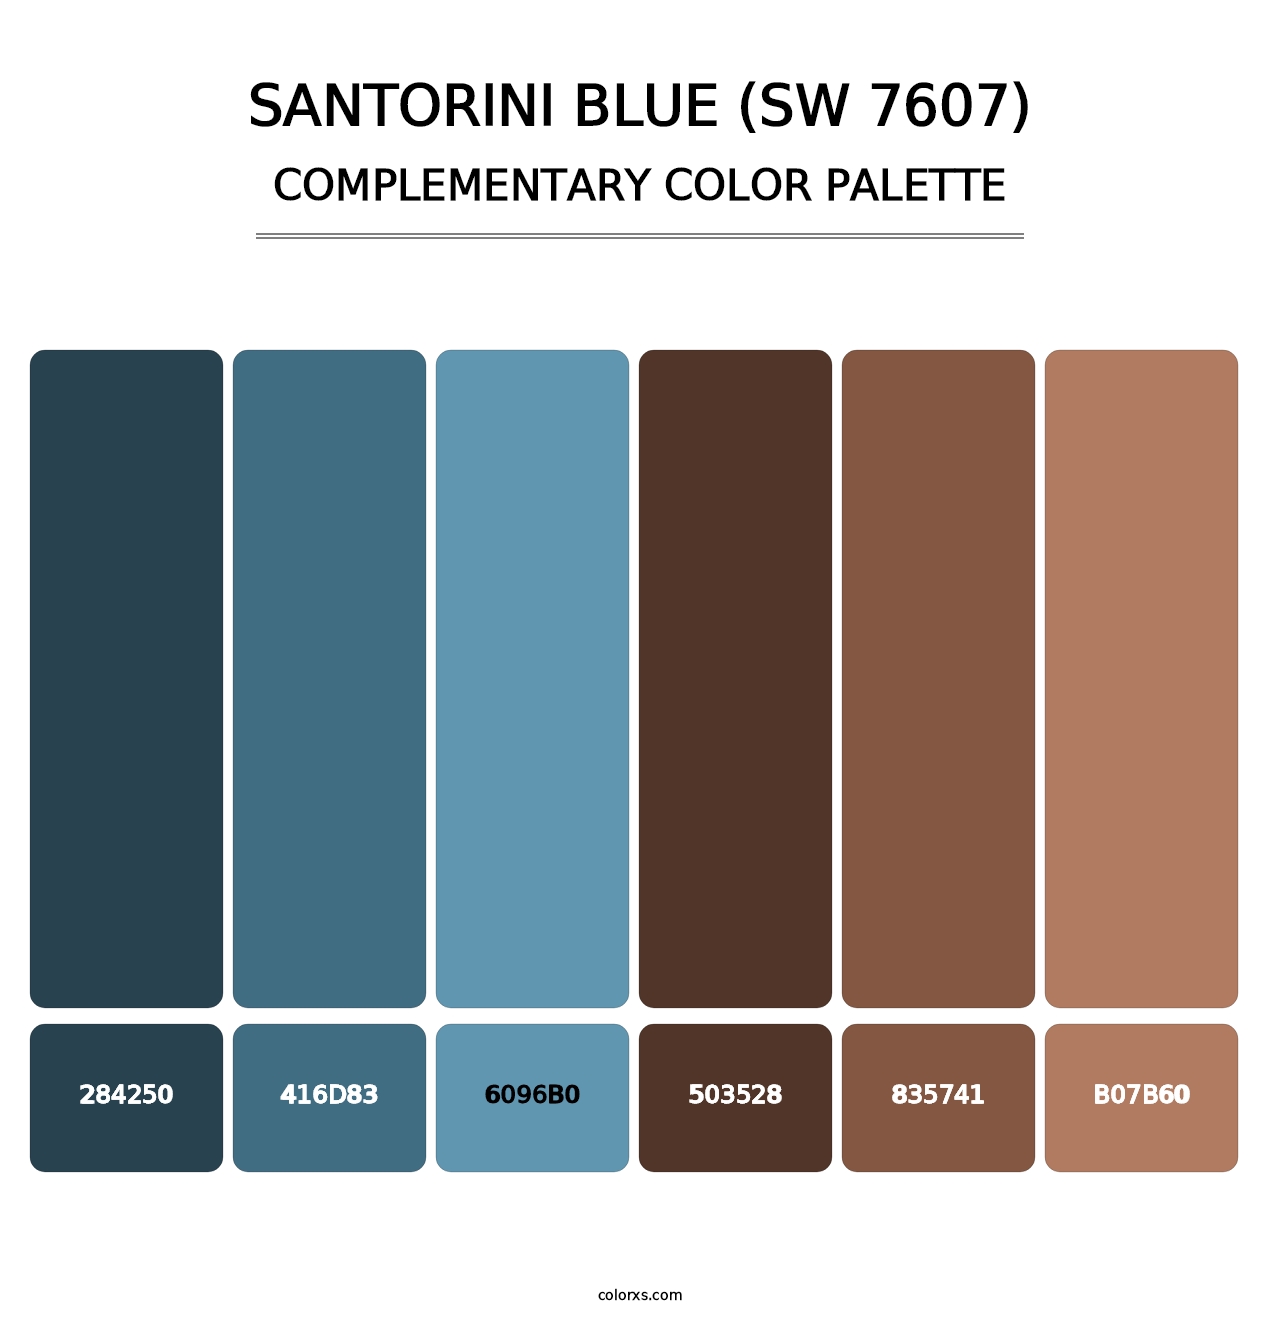 Santorini Blue (SW 7607) - Complementary Color Palette